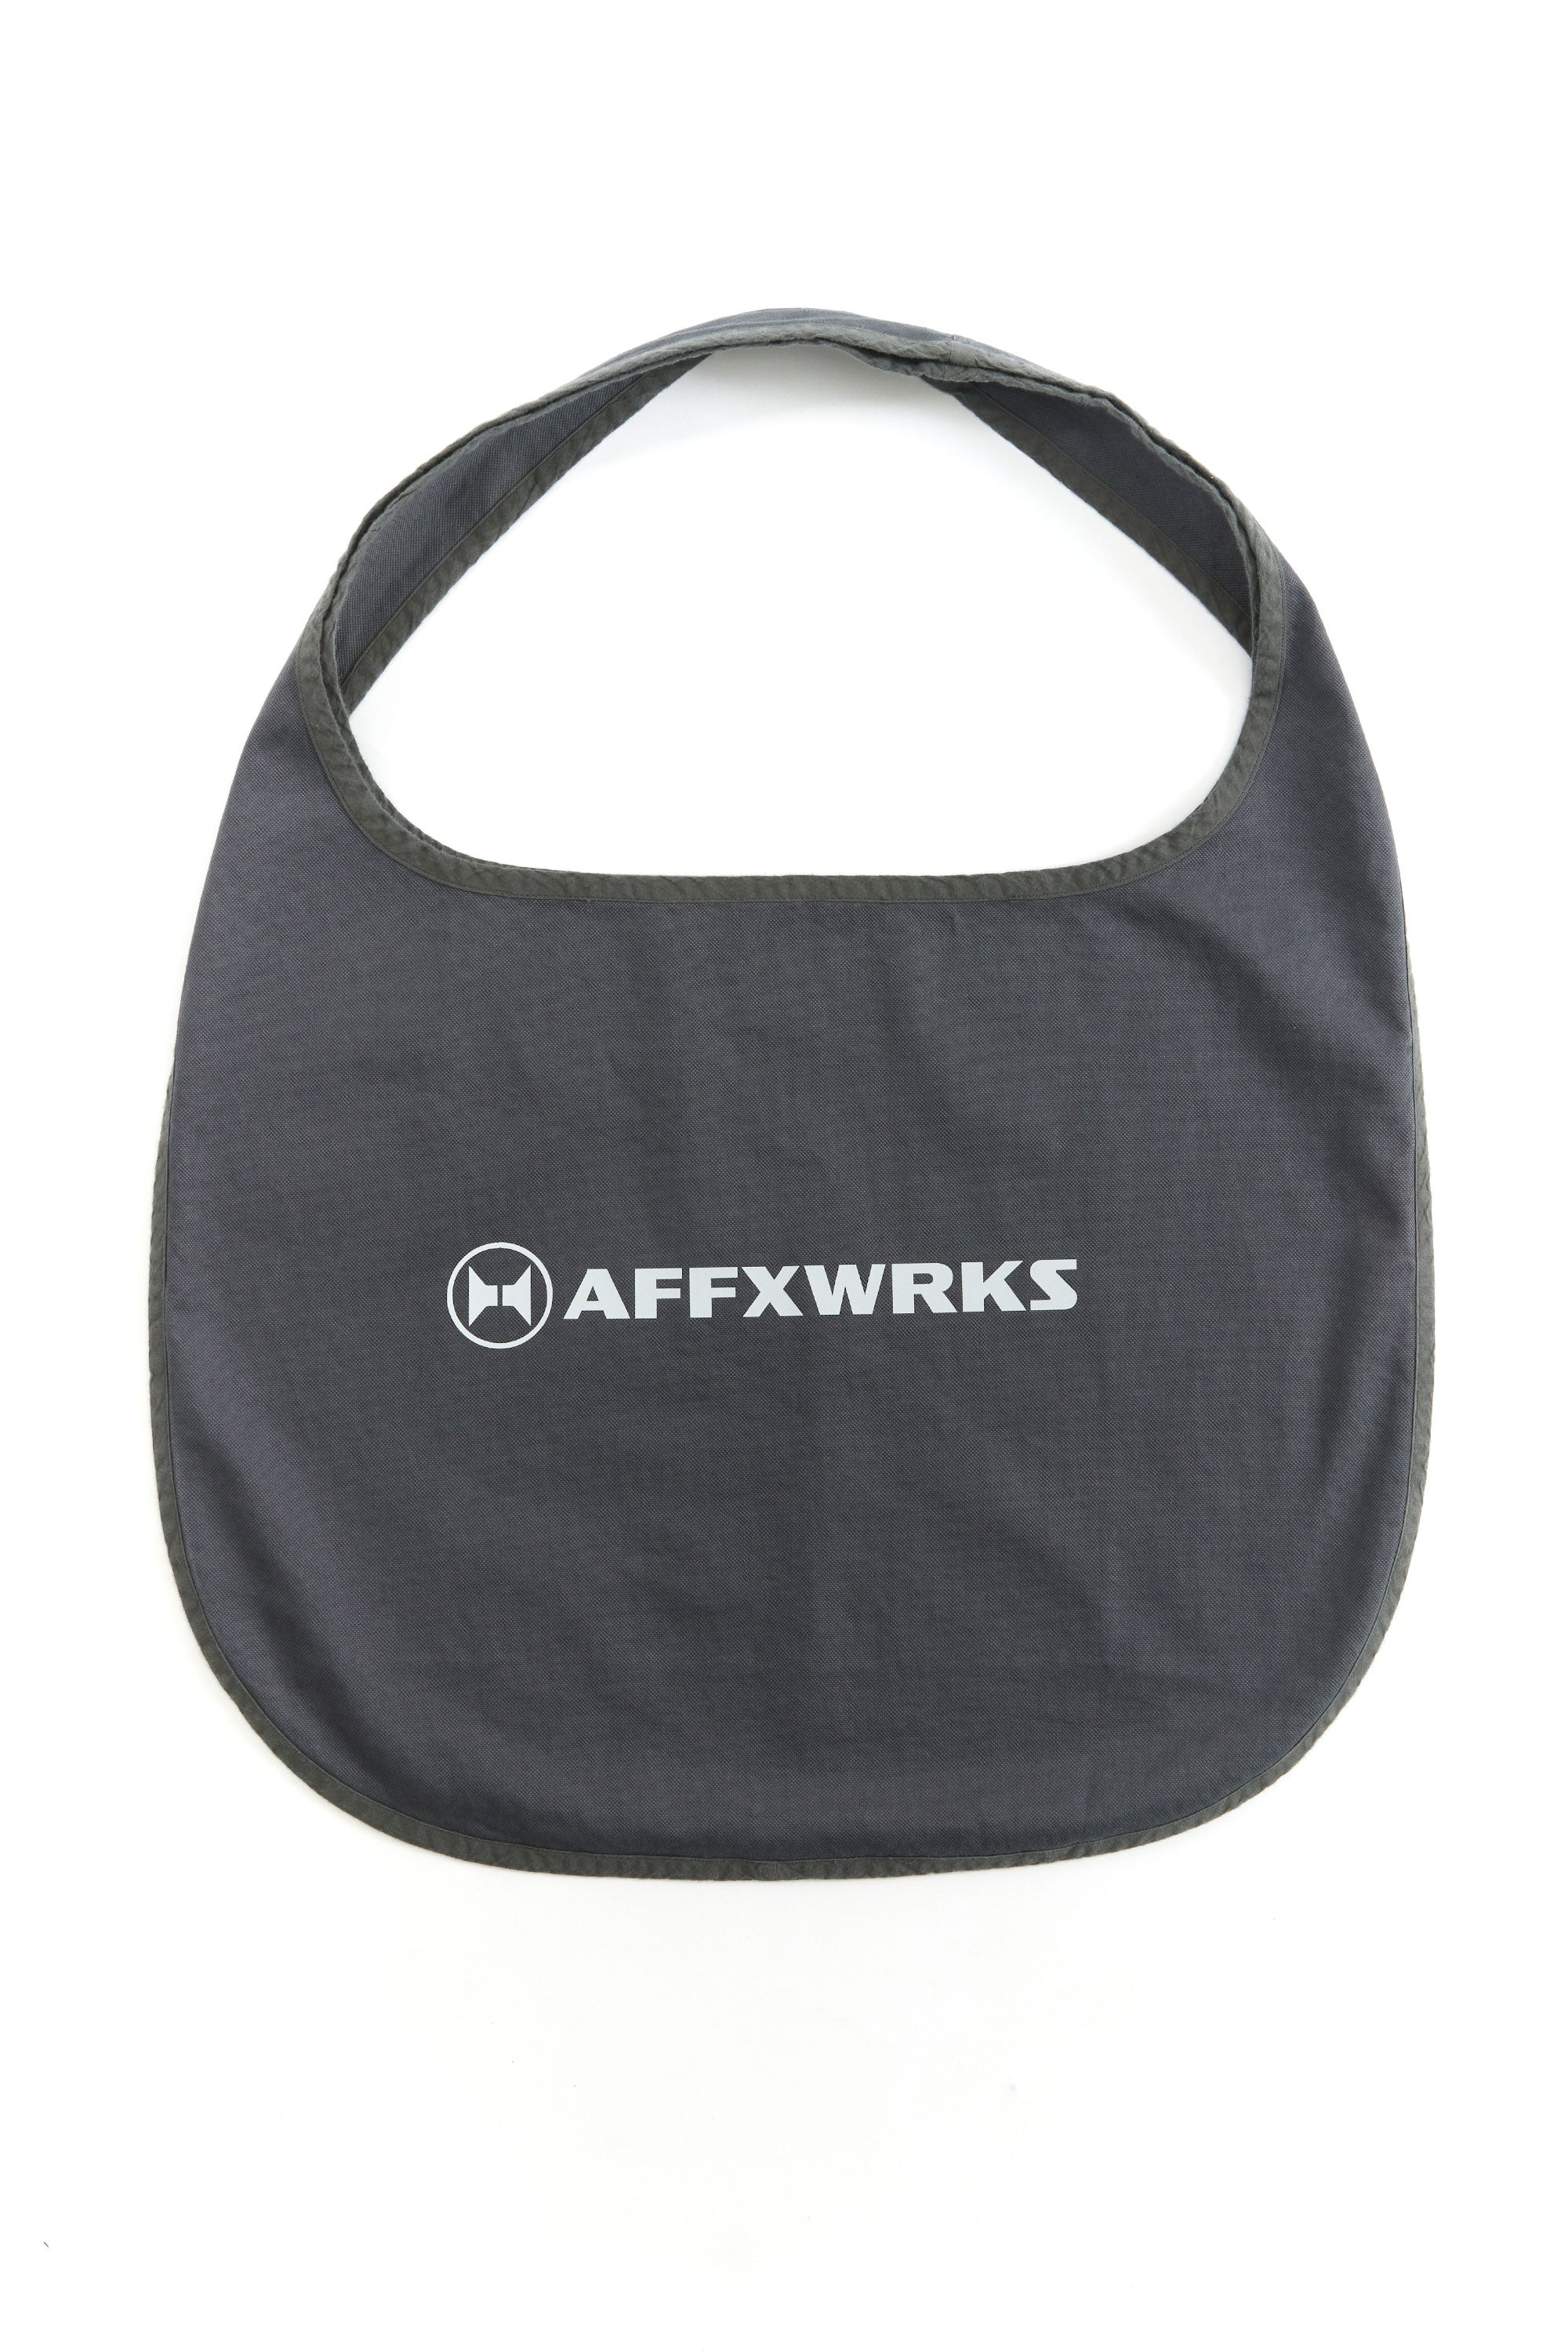 AFFXWRKS - CIRCULAR BAG – P.A.M. (Perks And Mini)